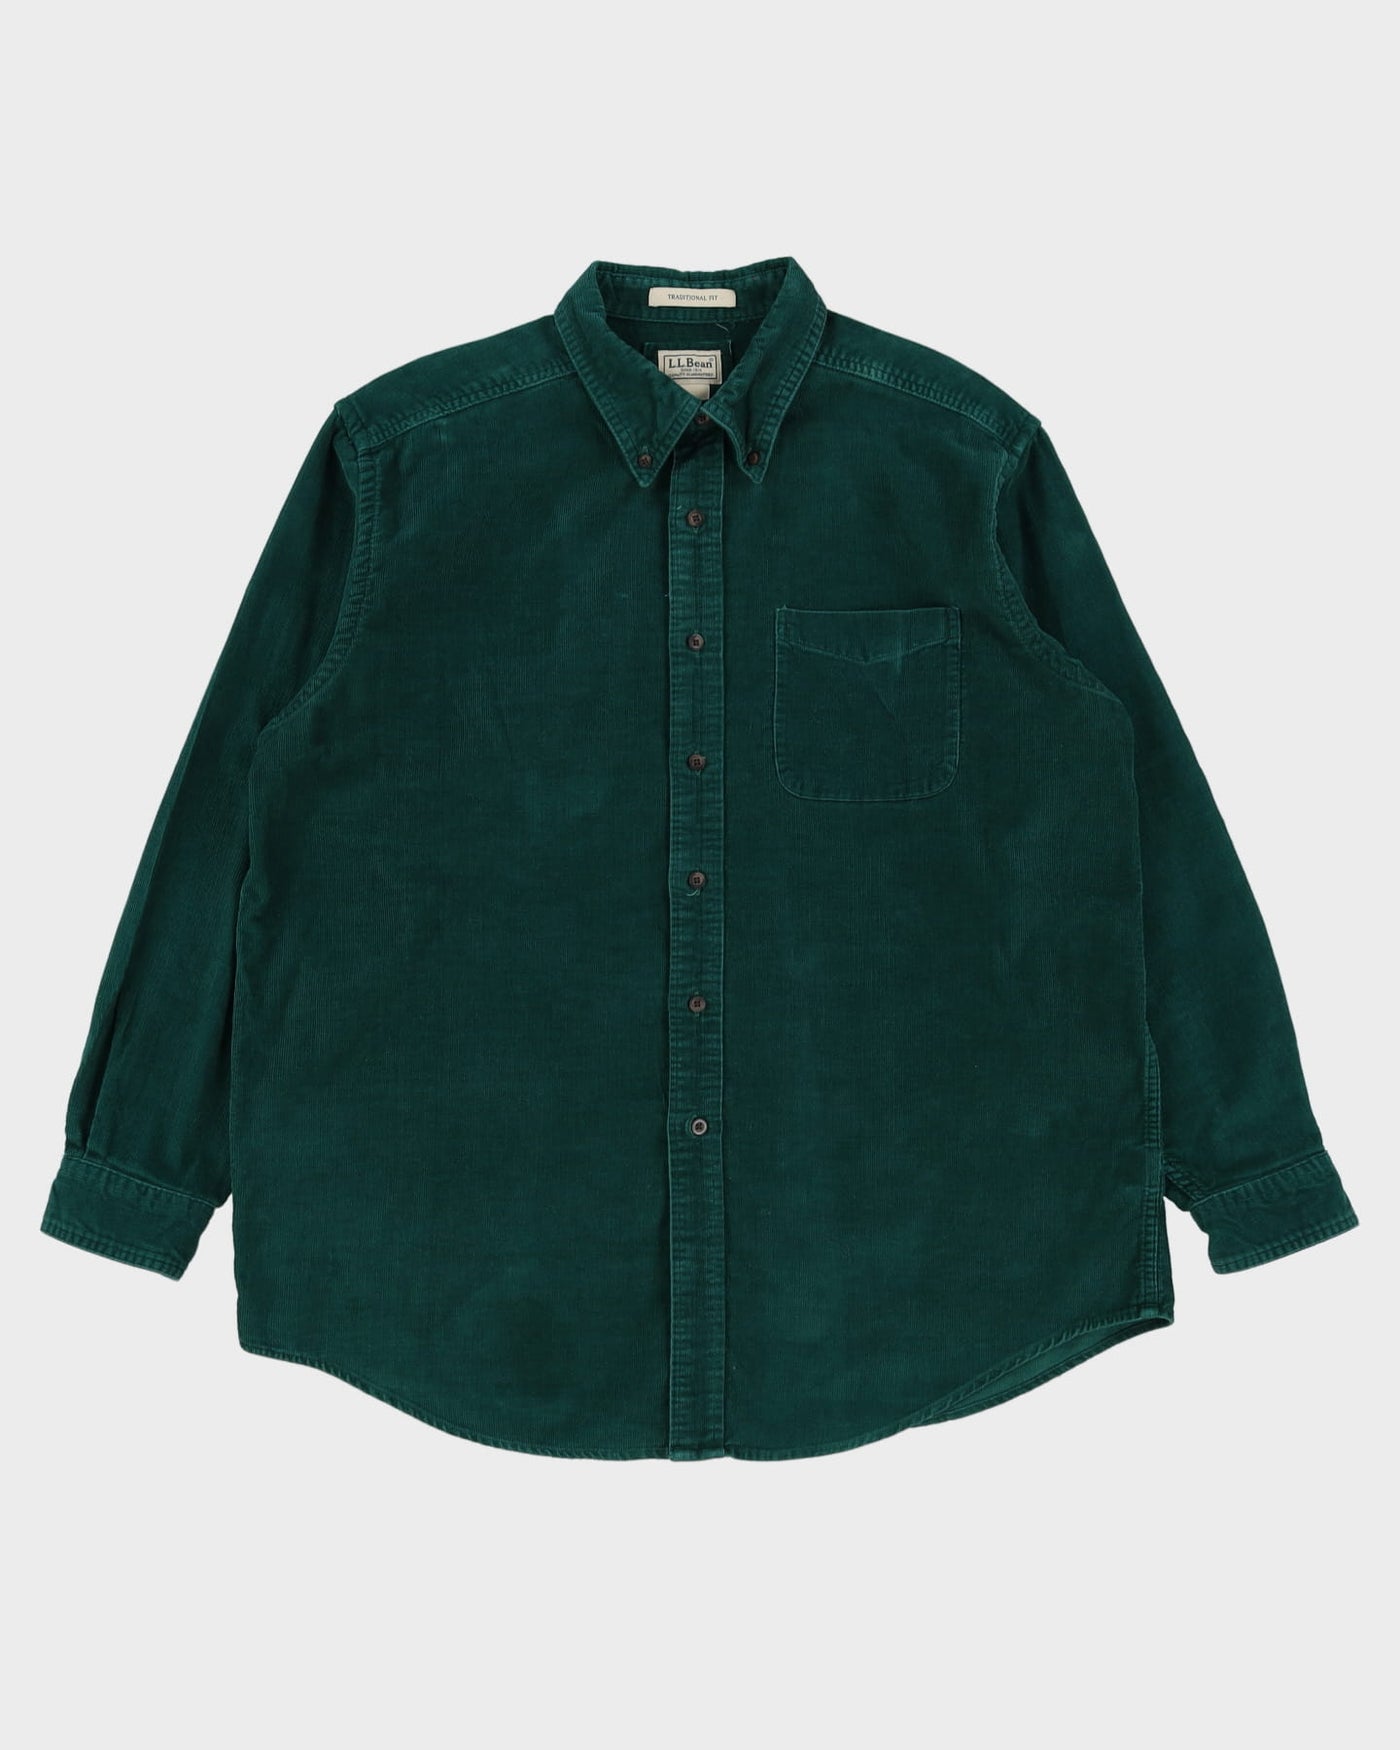 L.L. Bean Green Corduroy Shirt - XL